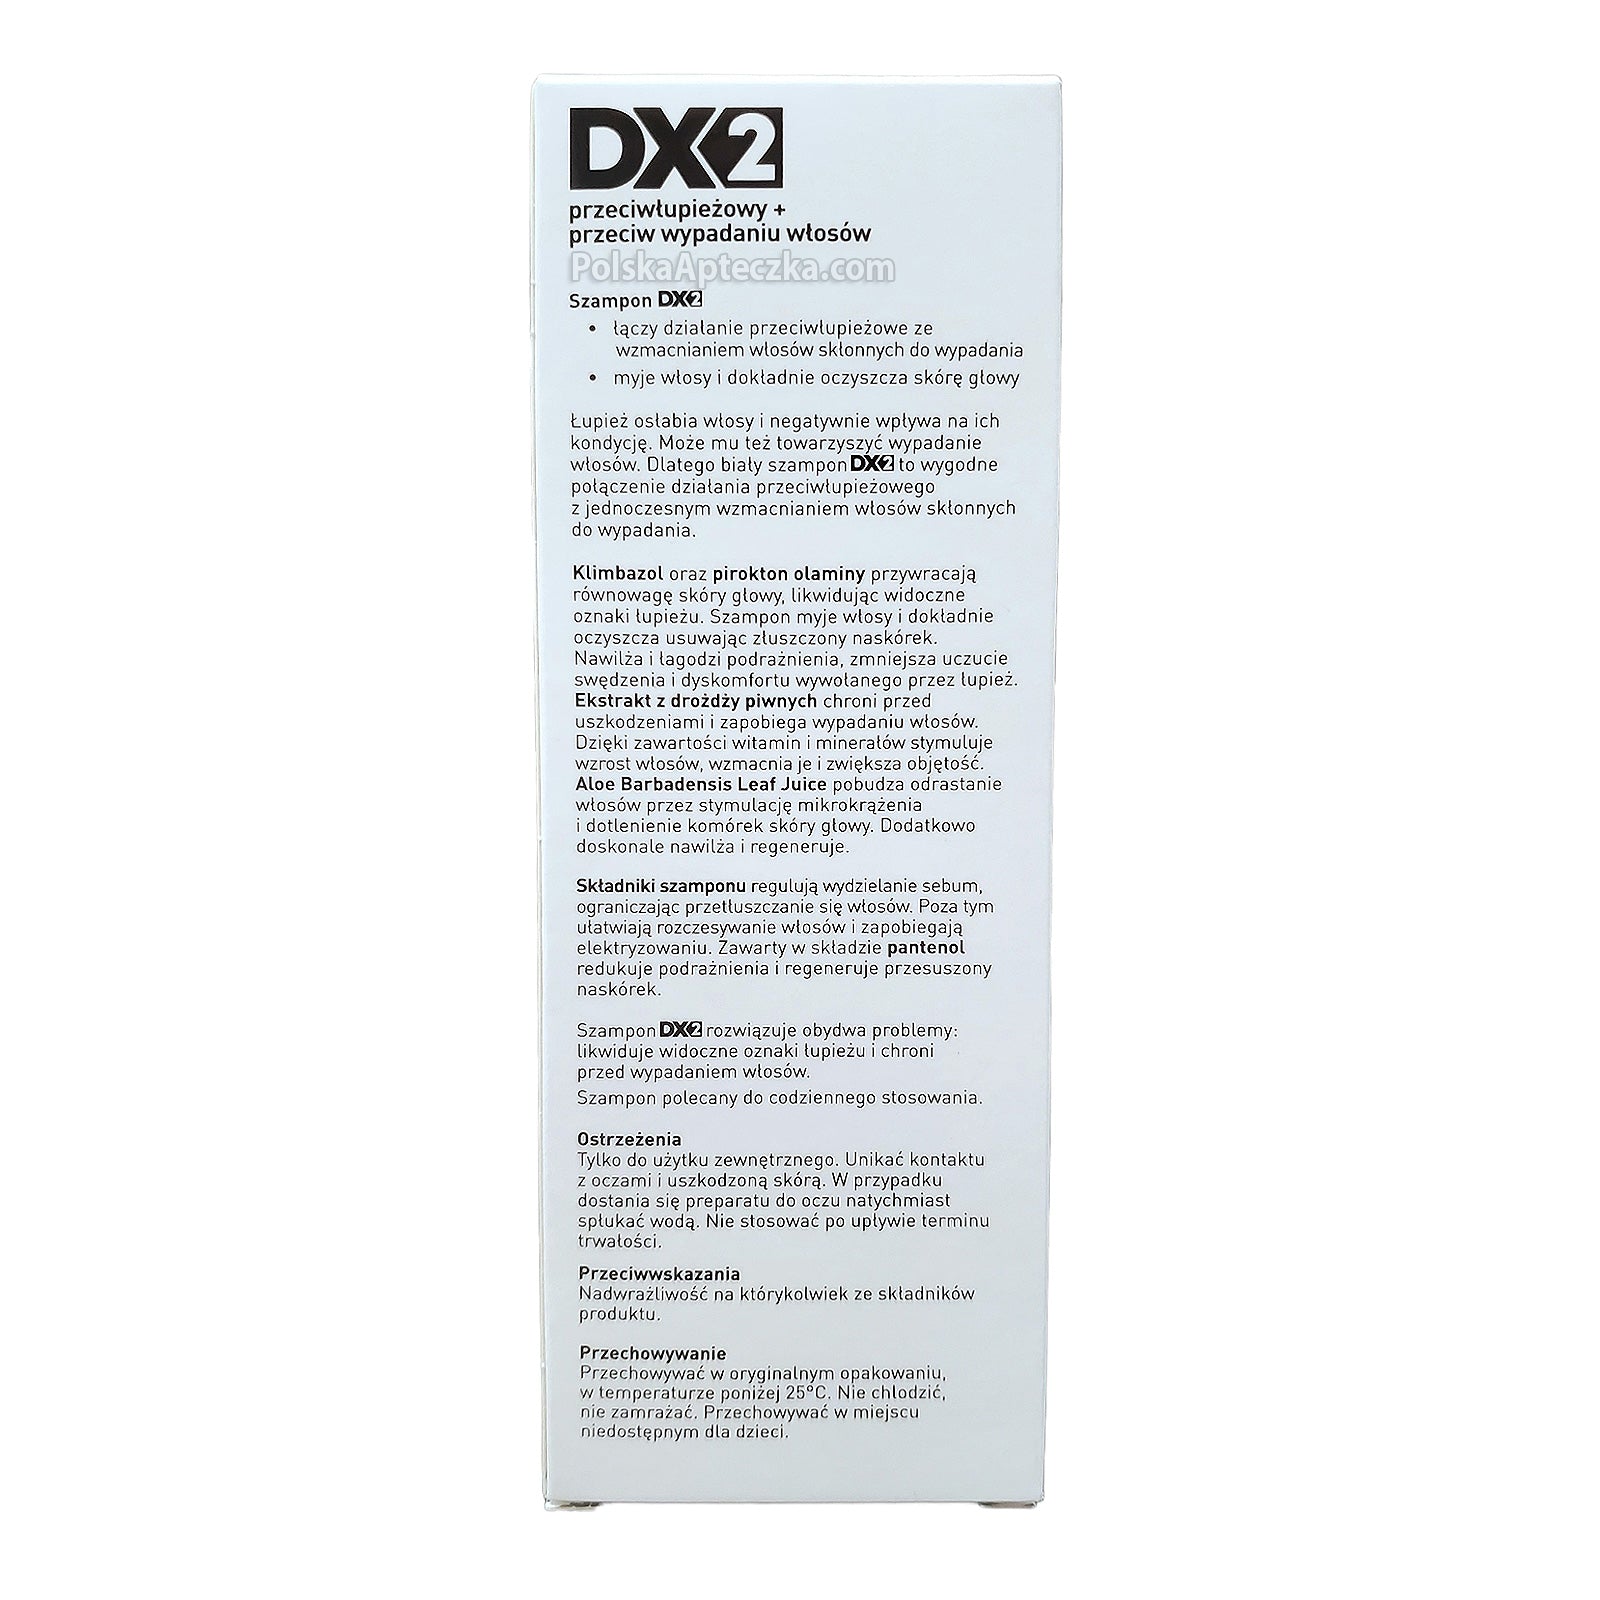 dx2 szampon sklad